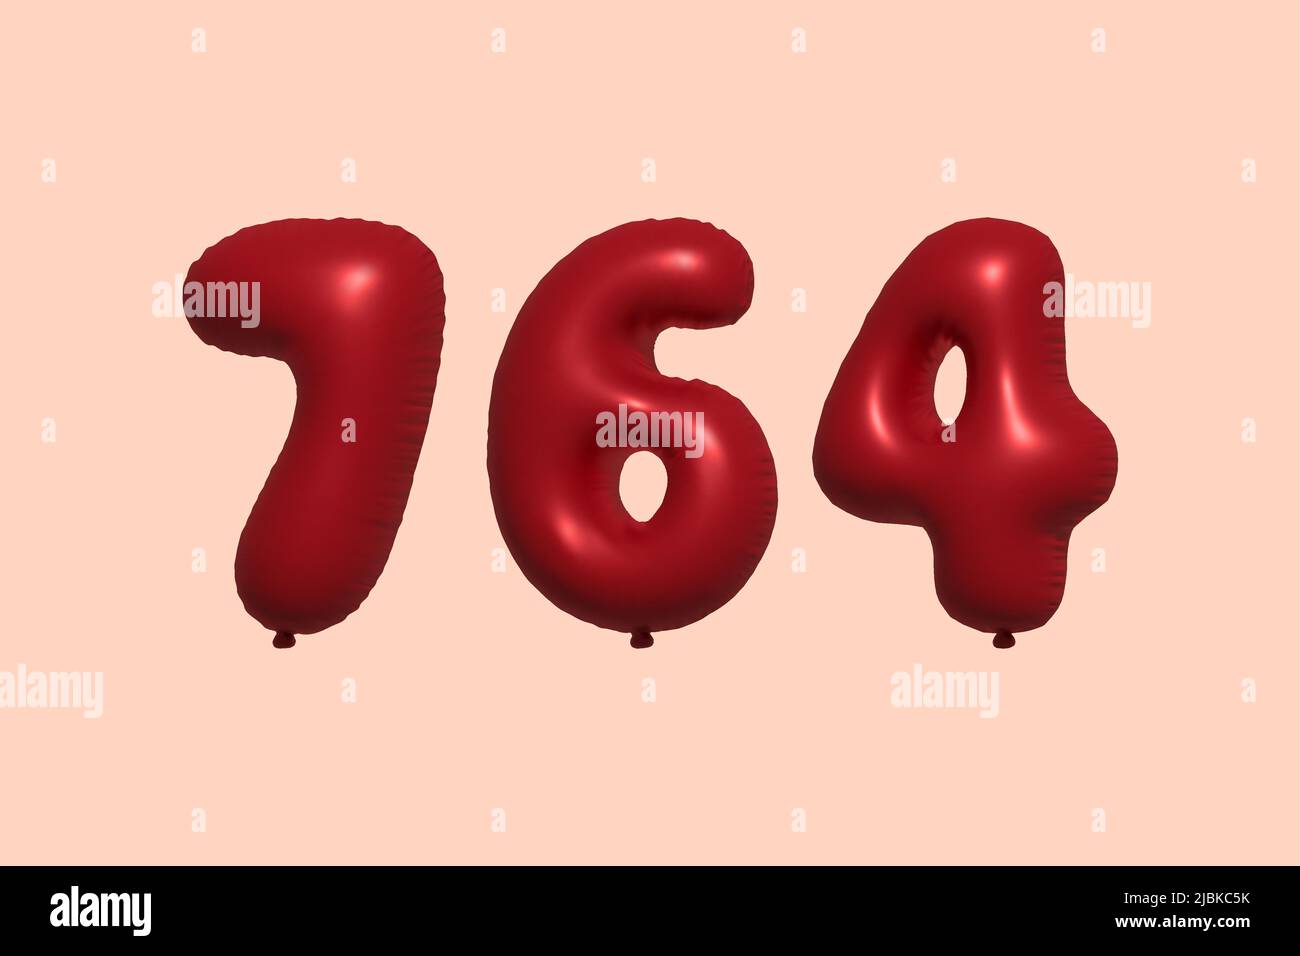 Fondo ilustracion 3d.Globos rojos.Cumpleaños,celebraciones y bodas. Stock  Photo